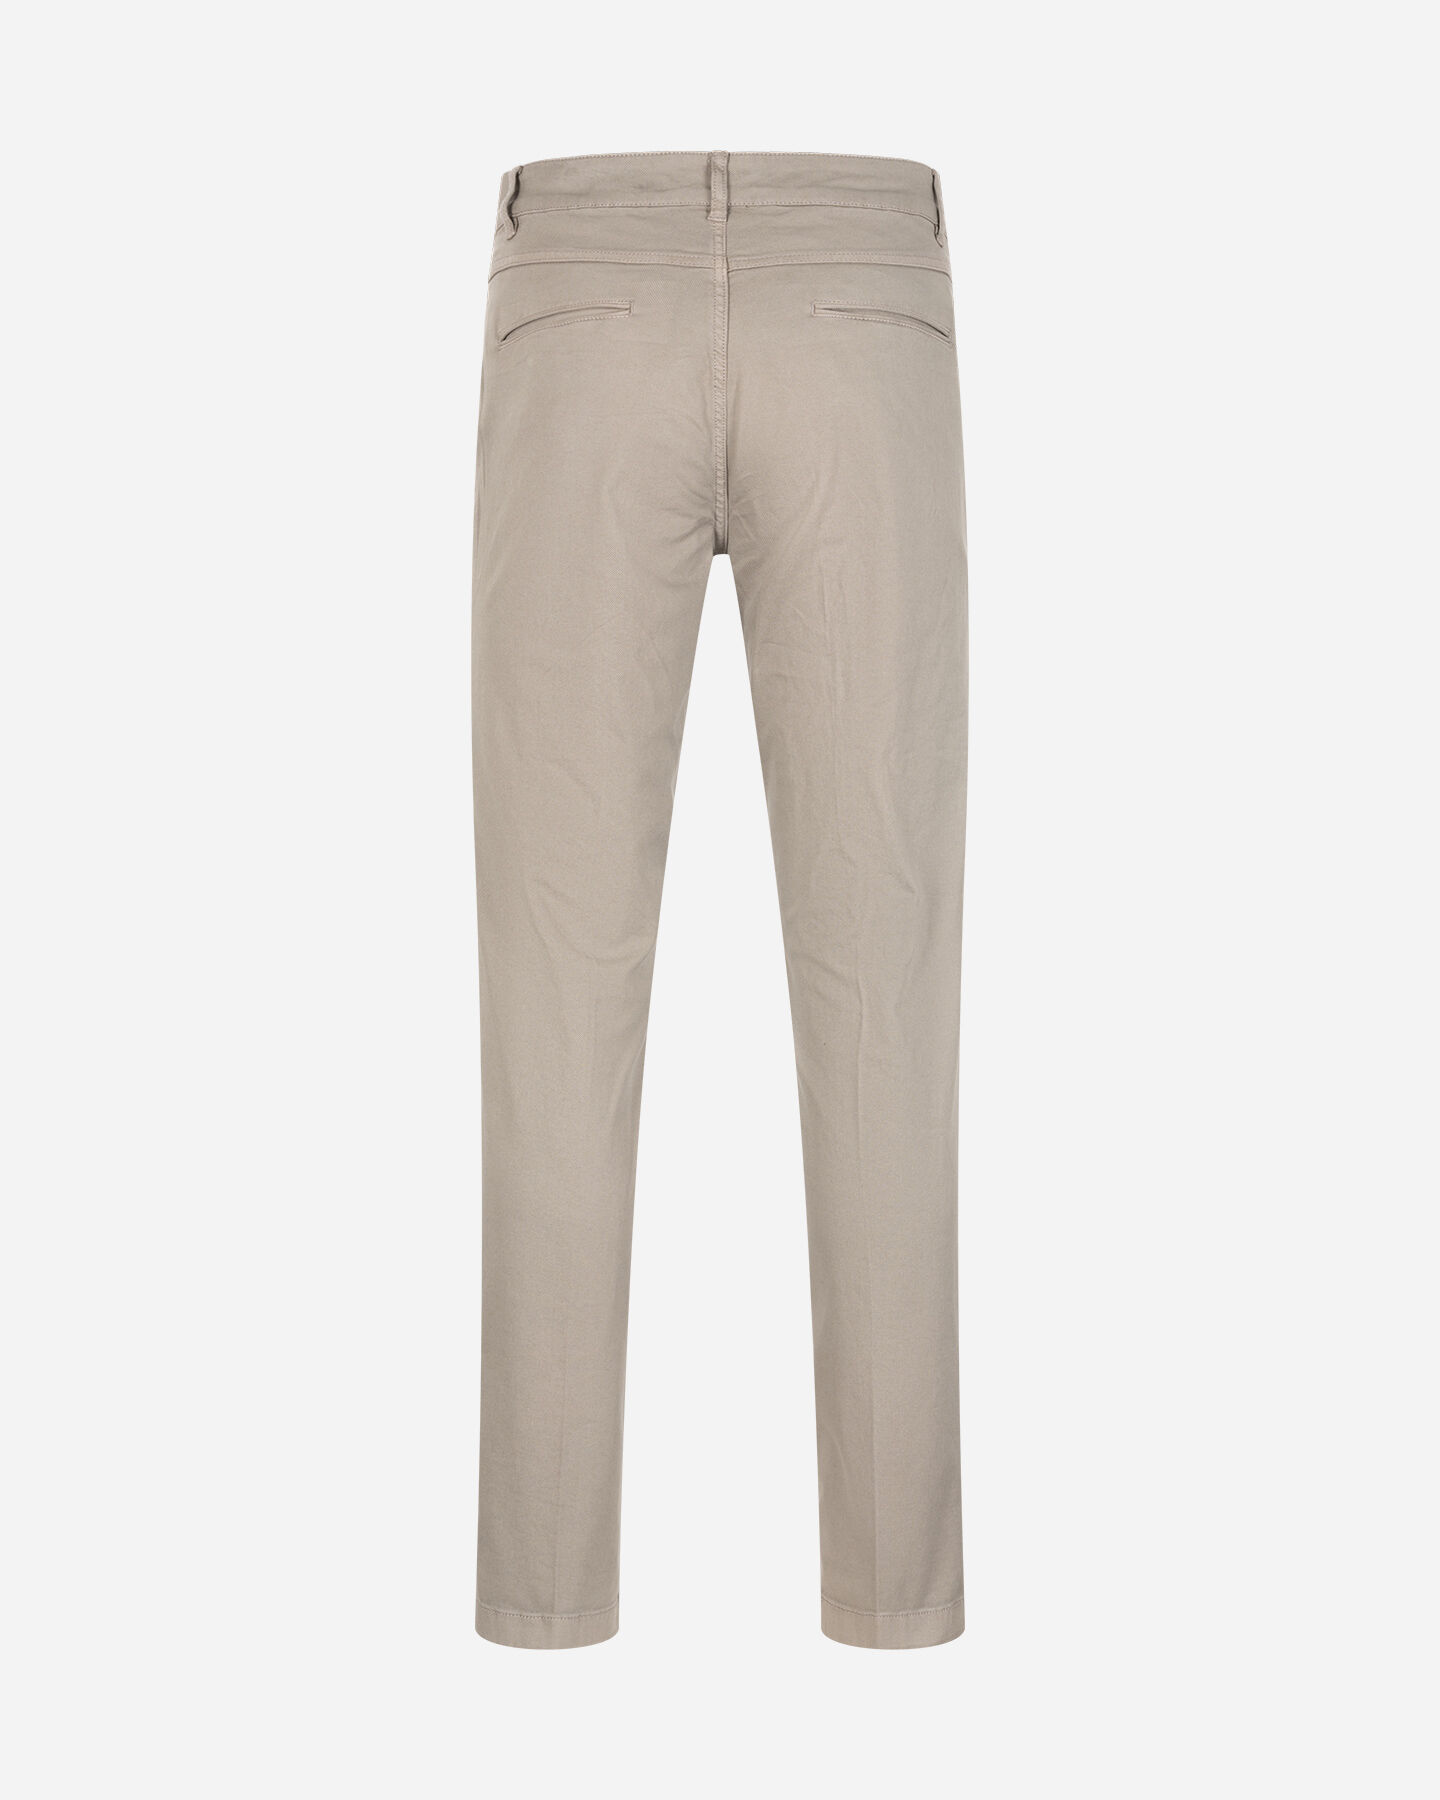  Pantalone BEST COMPANY COTTON LINE M S4131673|011|46 scatto 5